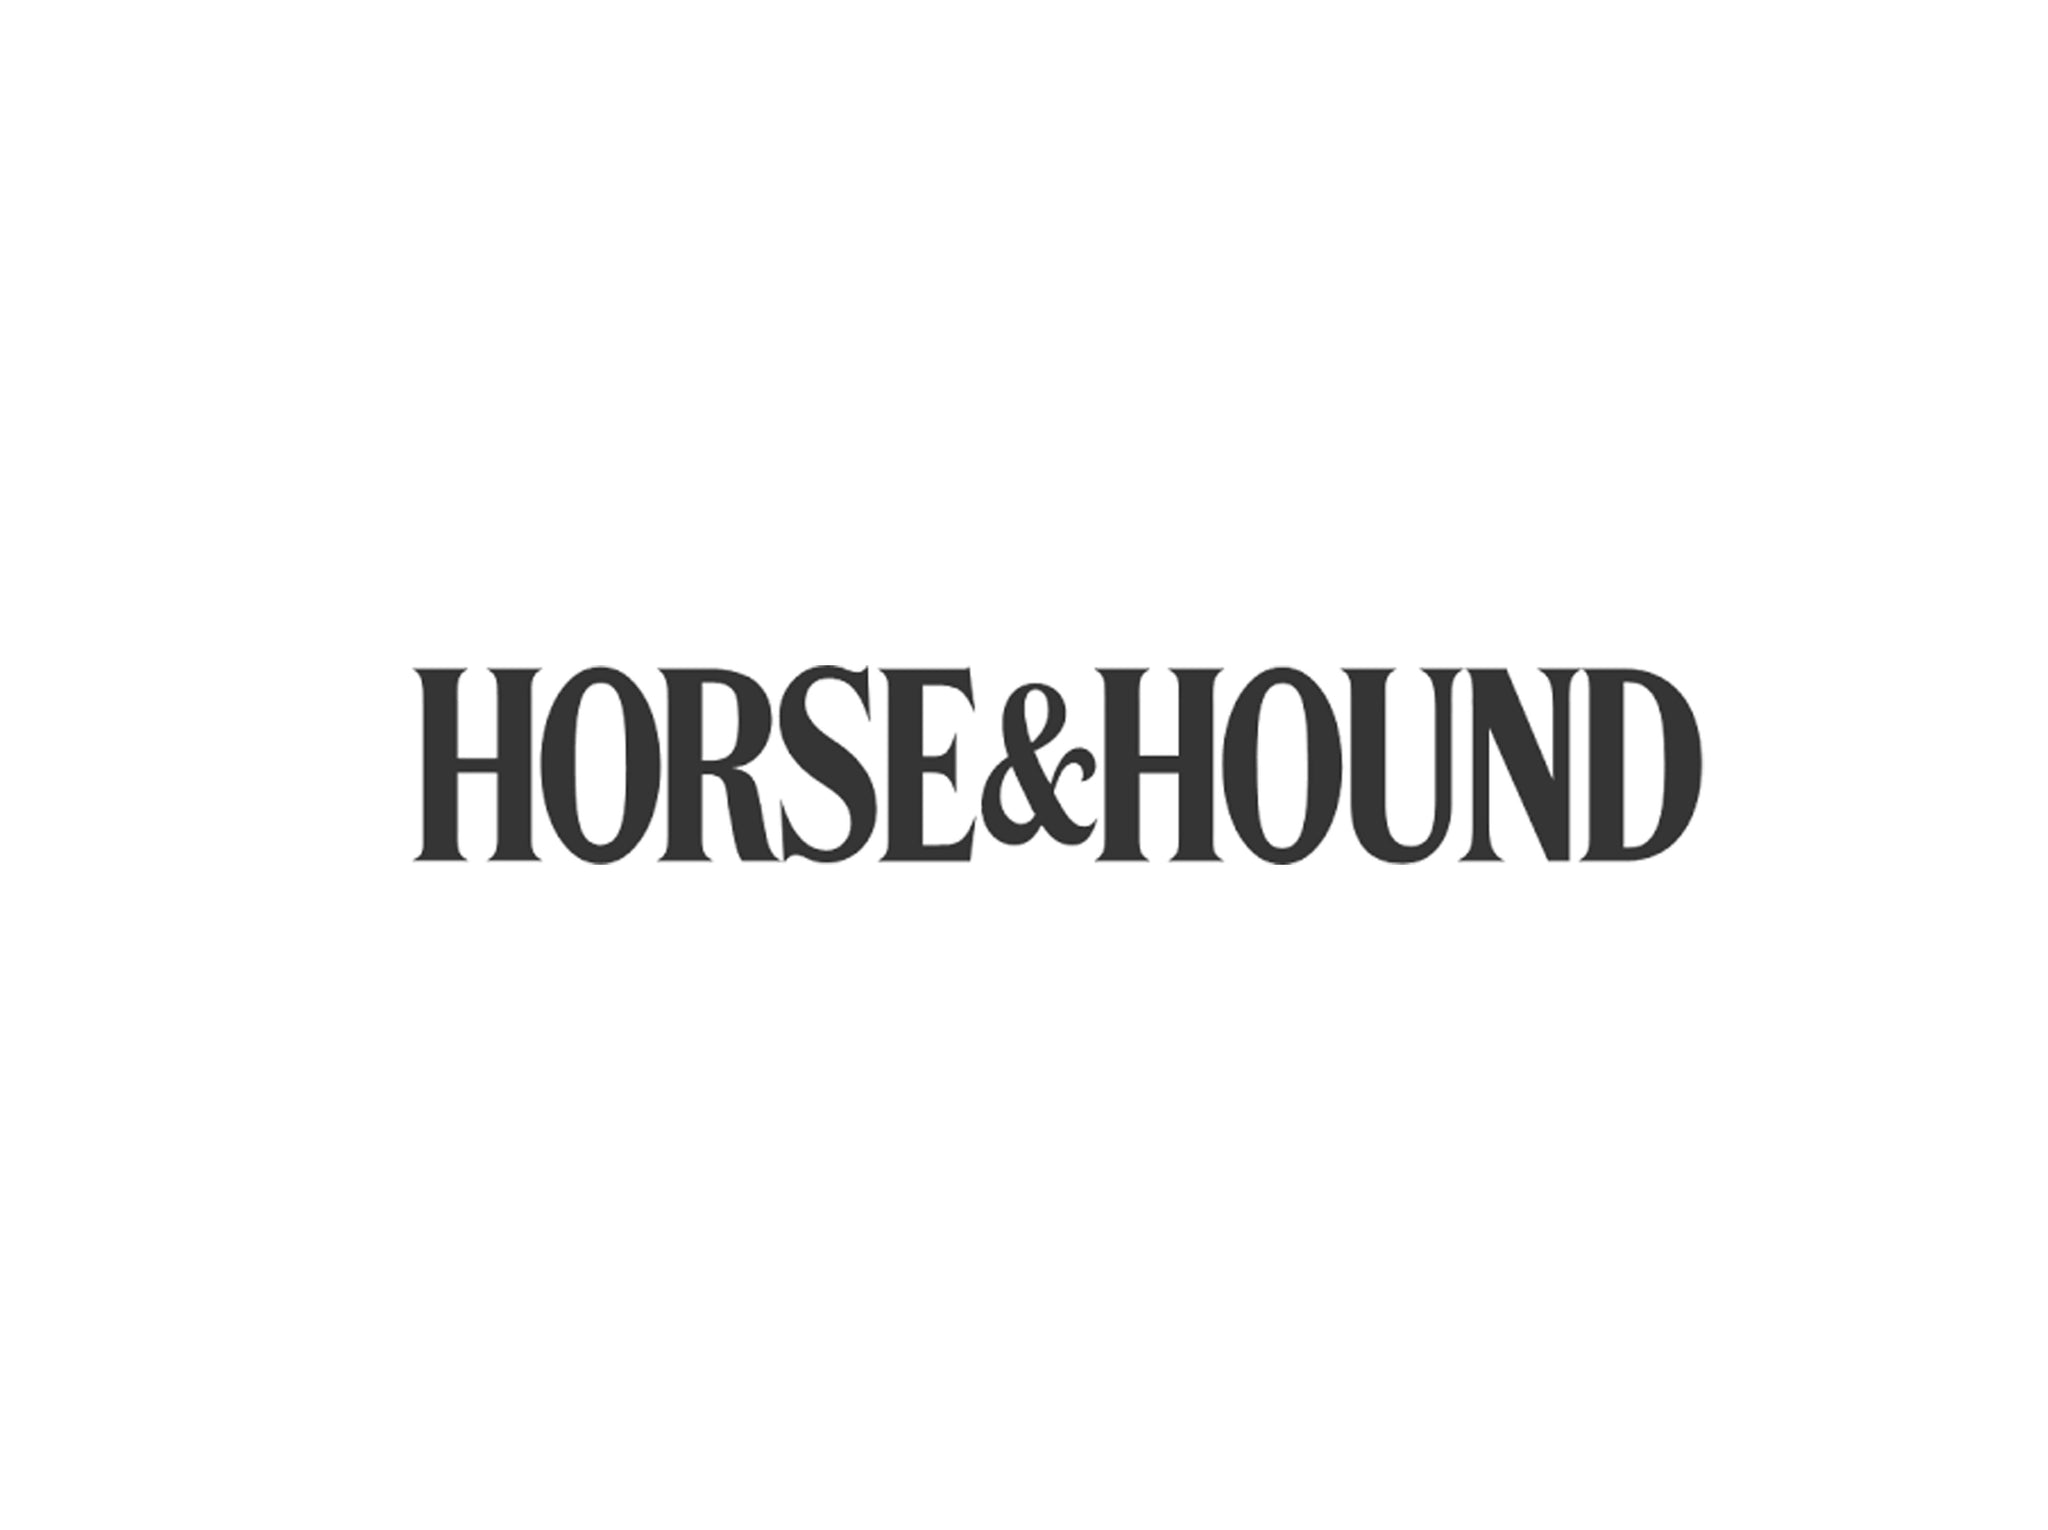 HC in Horse & Hound